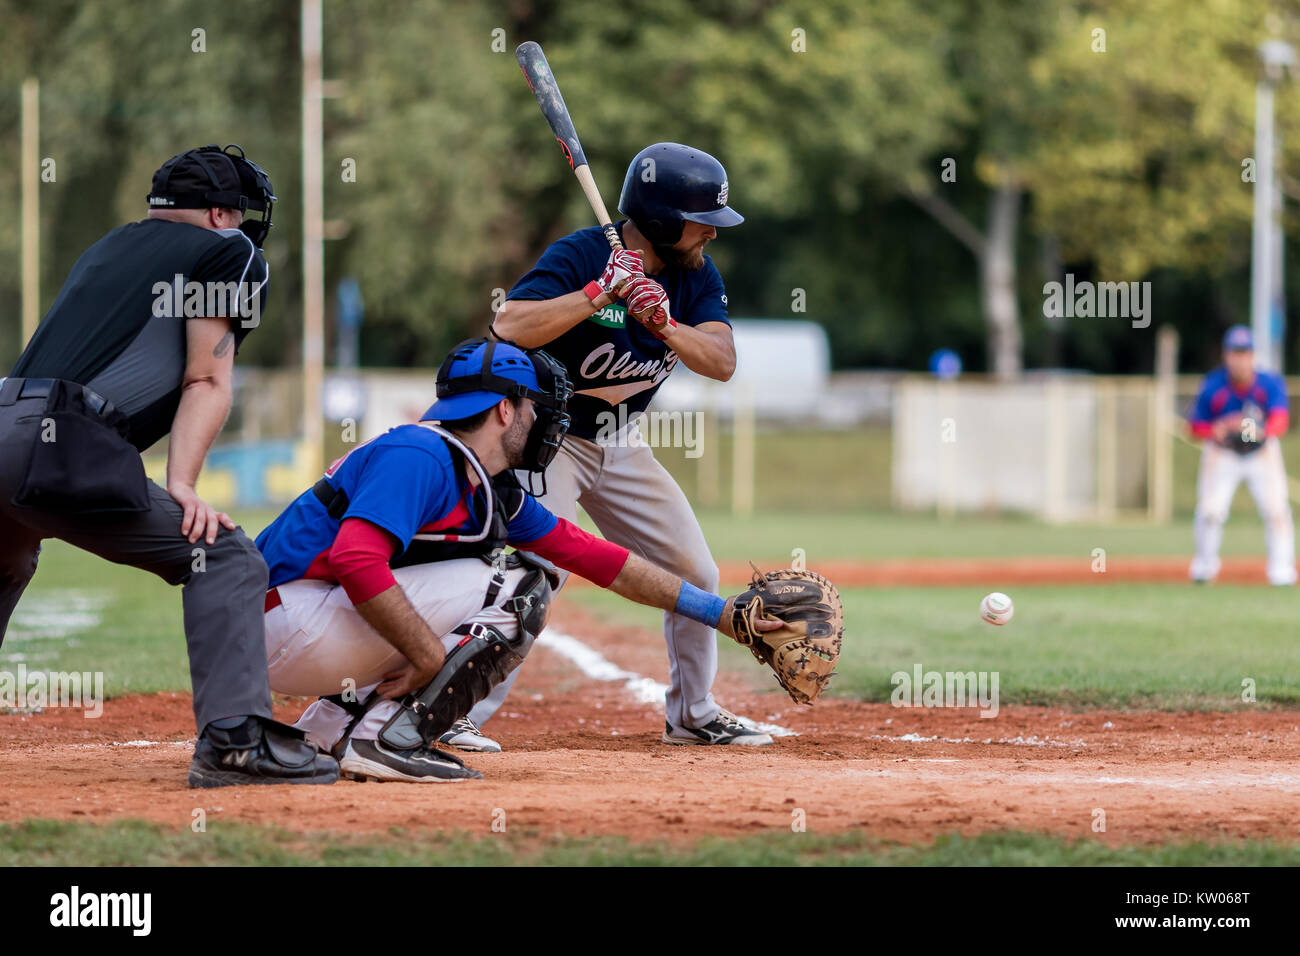 ZAGREB, KROATIEN - September 09, 2017: Baseball Match zwischen Baseball Club Zagreb und BK Olimpija 83. Baseball Batter, Catcher und Schiedsrichter auf Pla Stockfoto